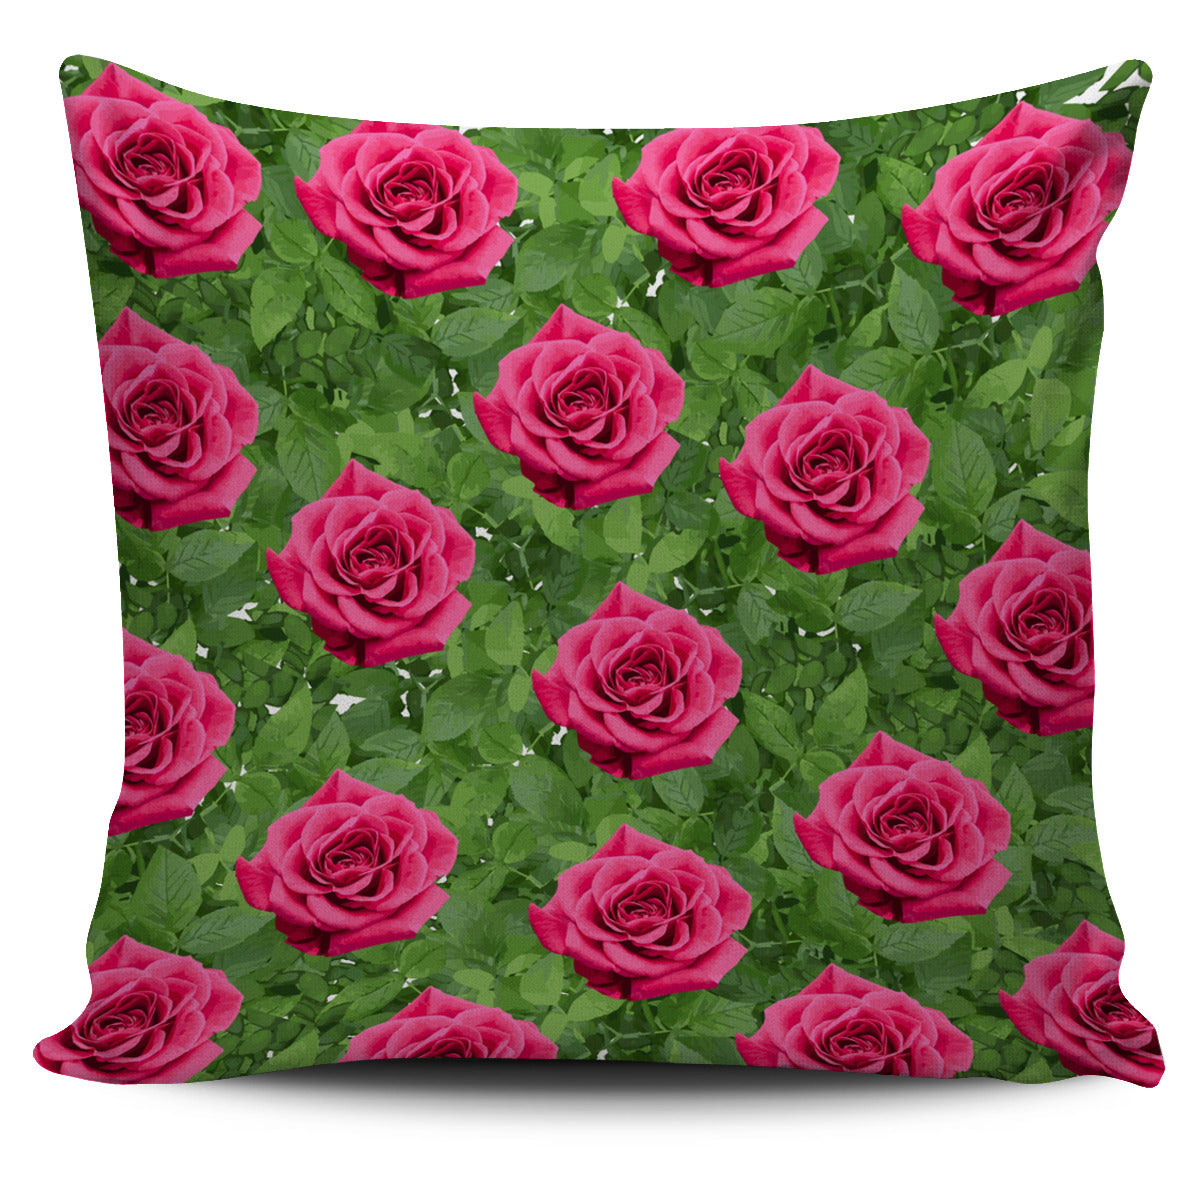 Rose Garden Pillow Cover